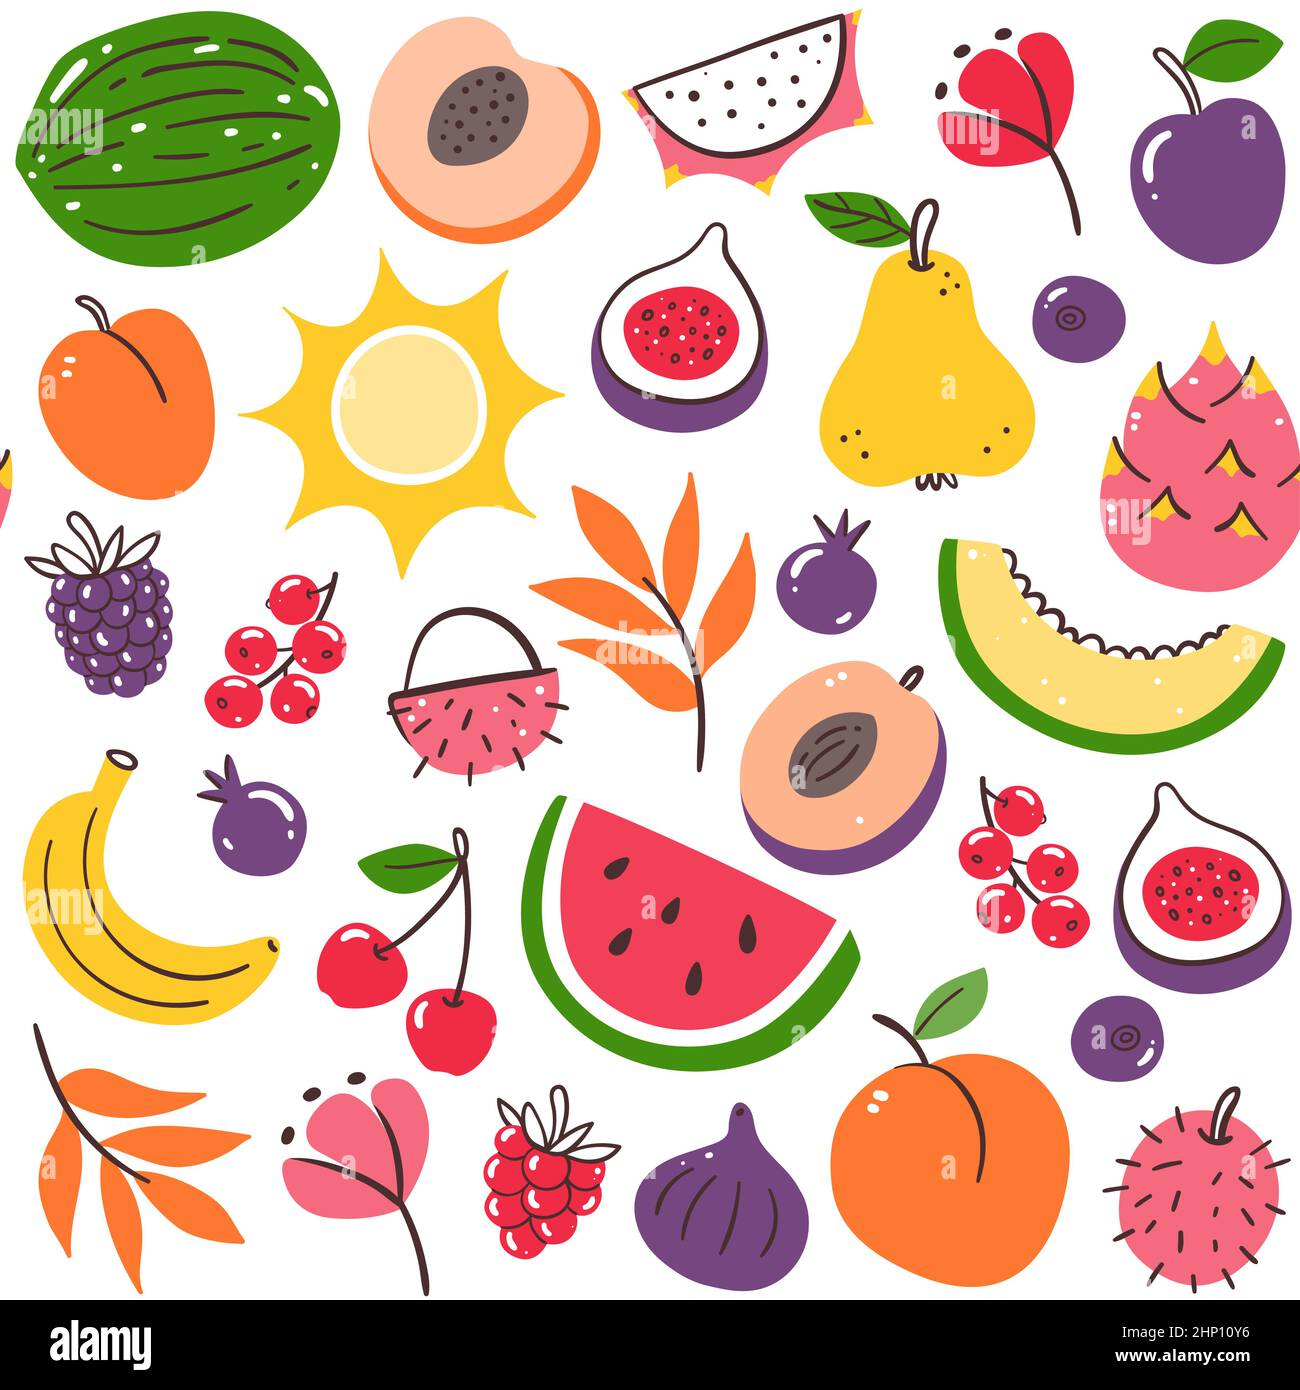 Farbenfrohe Früchte der Saison im nahtlosen Muster. Isolierte Früchte auf weißem Hintergrund. Vektorgrafik. Stock Vektor